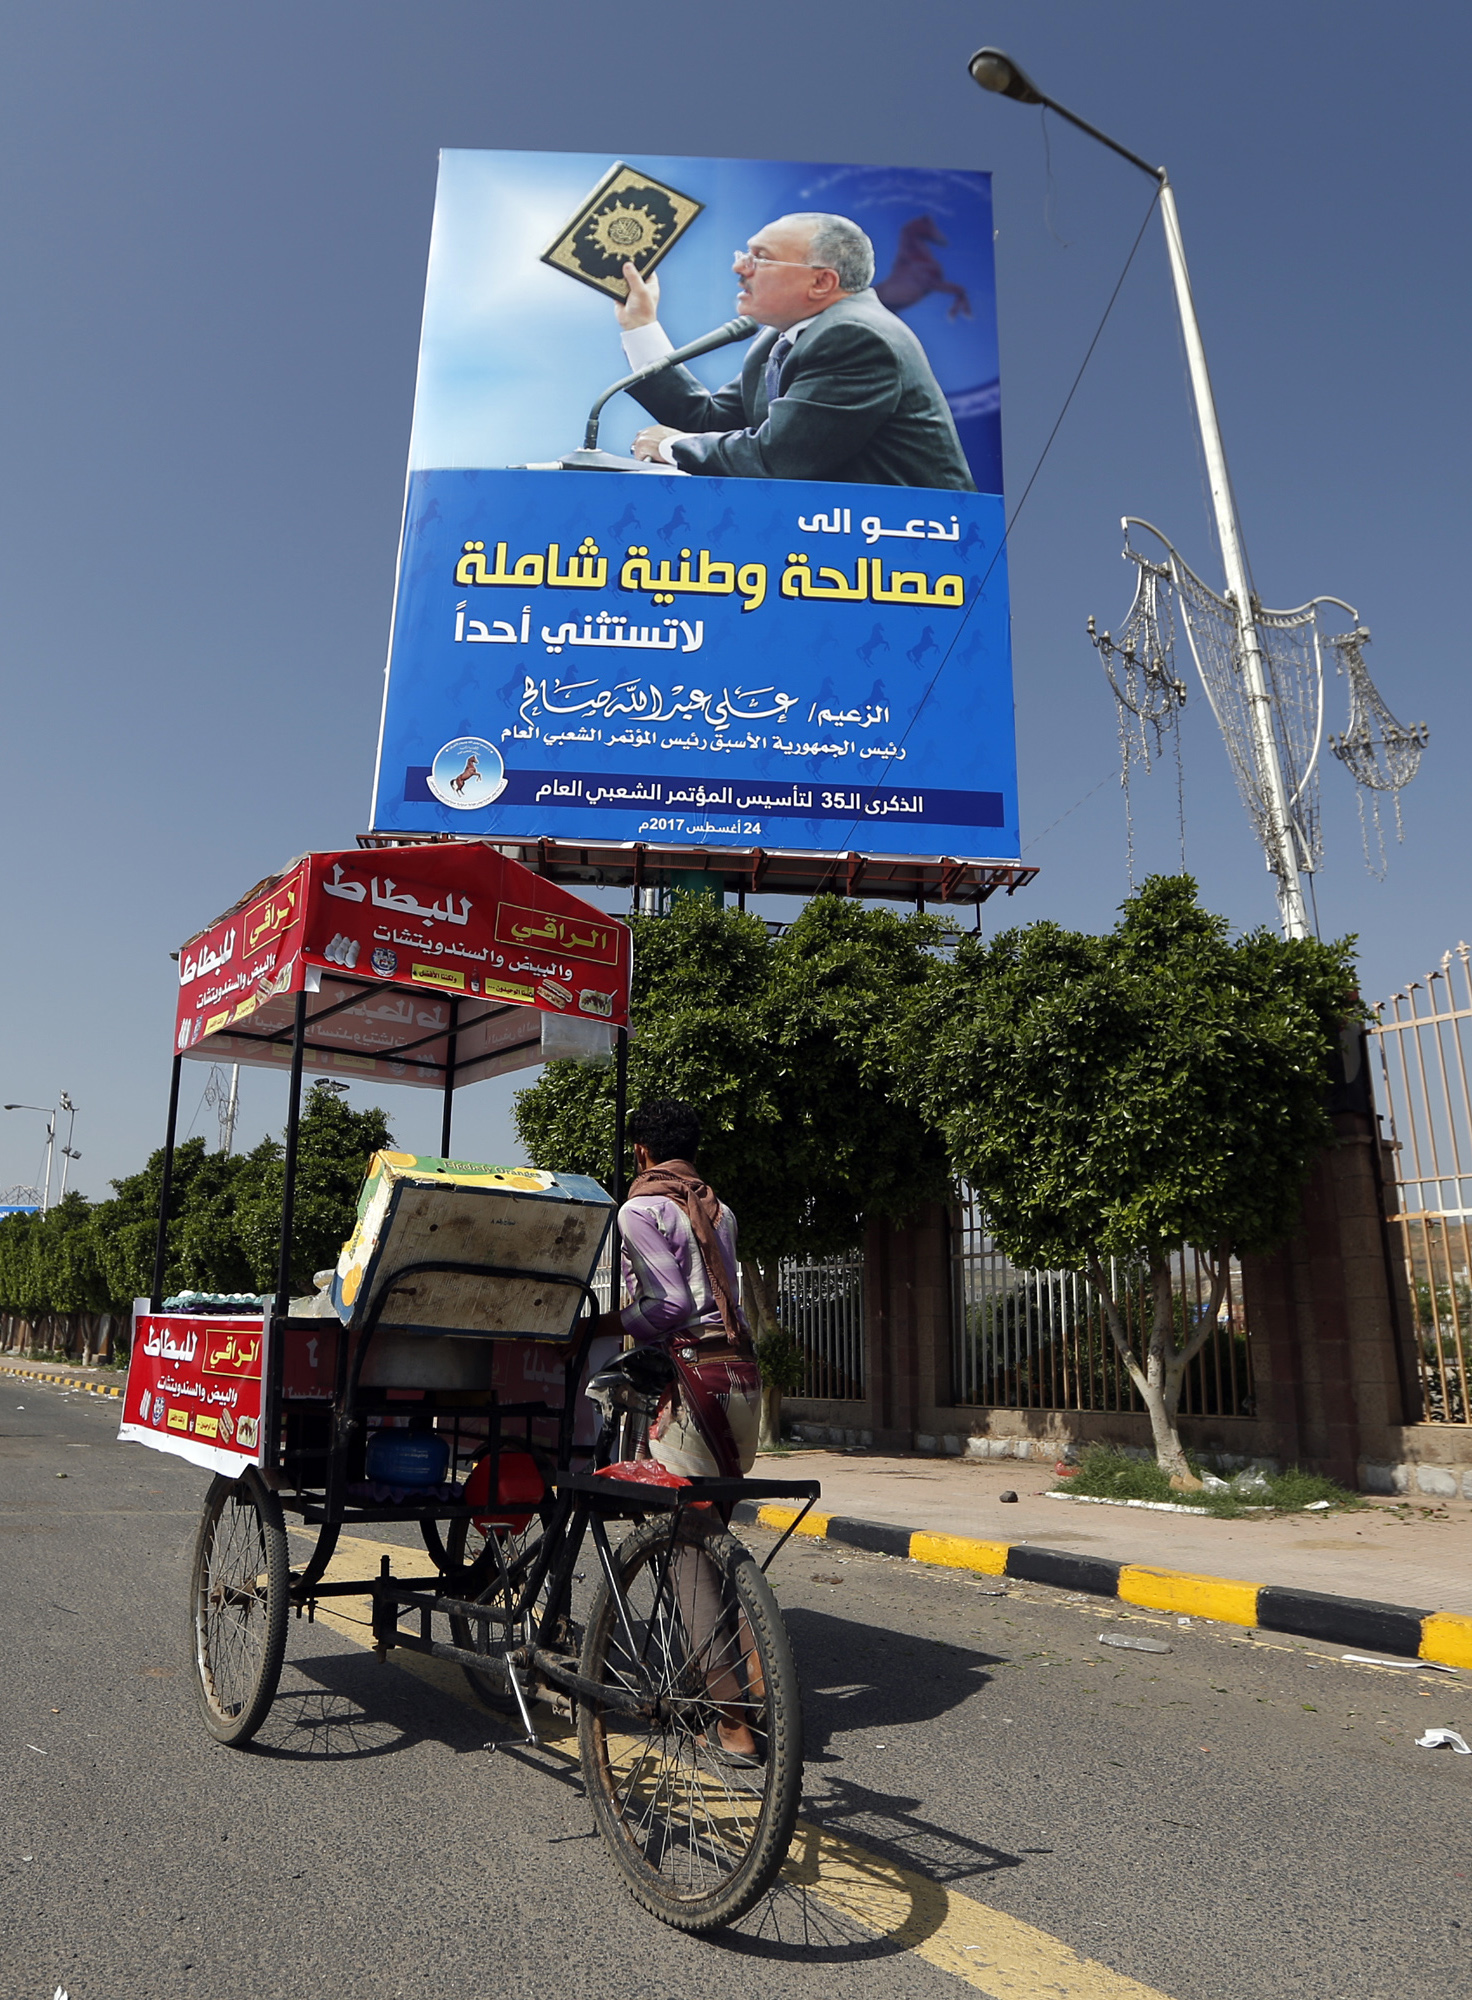 بوسترات دعوة المصالحة تنتشر فى شوارع العاصمة اليمنية